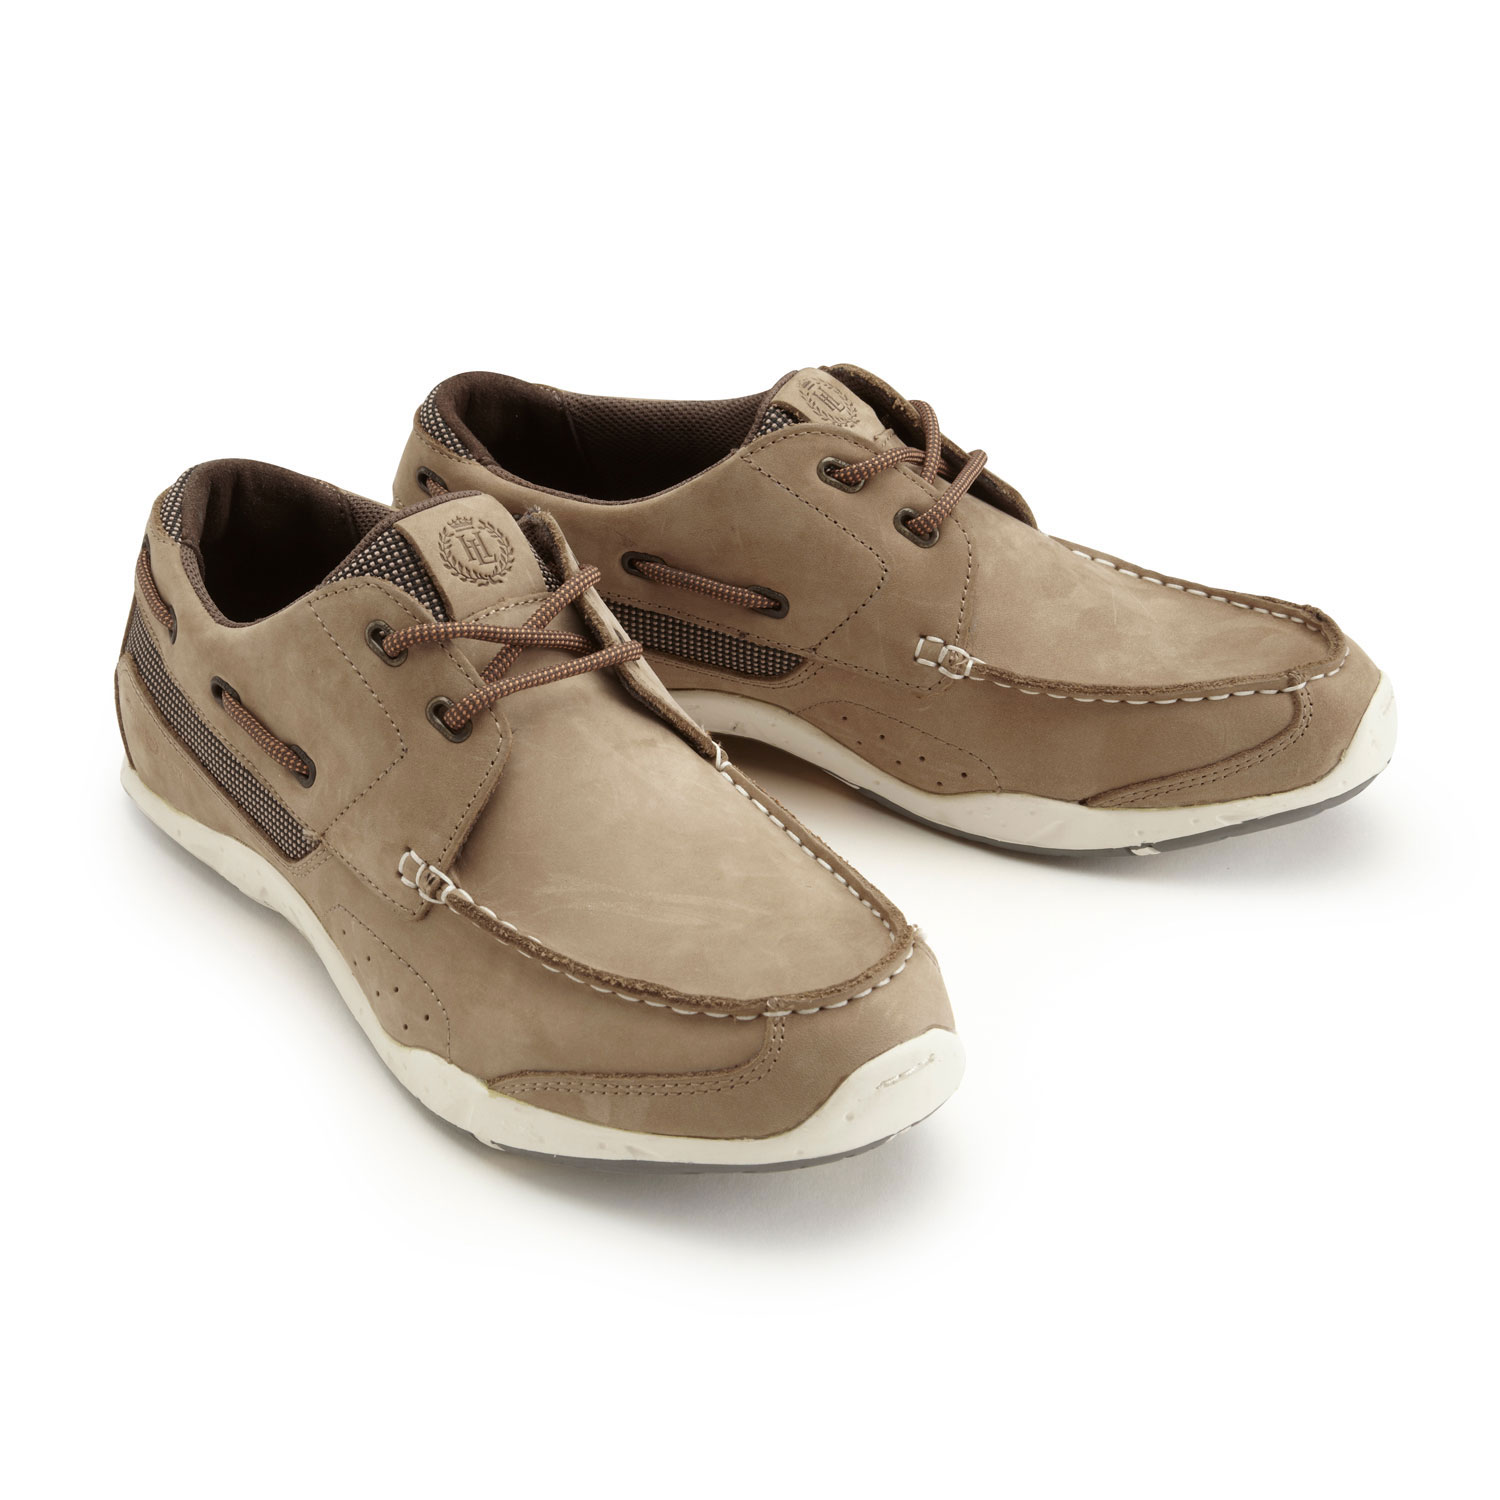 Henri Lloyd Valencia Leather Deck Shoes 2016 - Brown | eBay